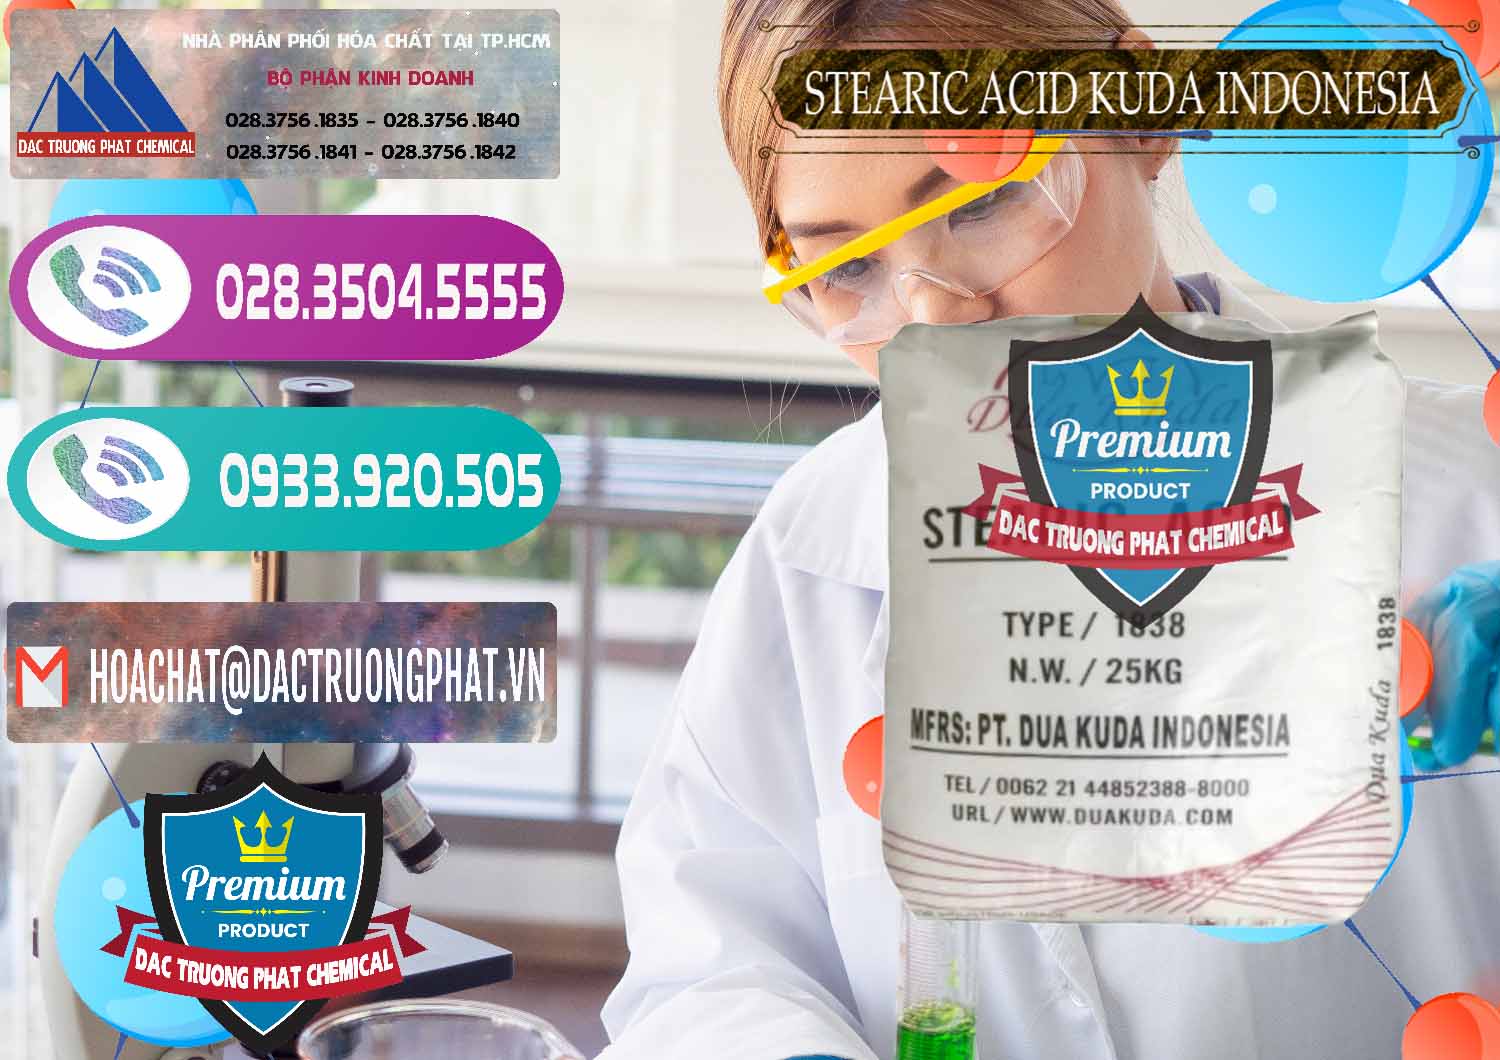 Cty nhập khẩu & bán Axit Stearic - Stearic Acid Dua Kuda Indonesia - 0388 - Công ty kinh doanh và phân phối hóa chất tại TP.HCM - hoachatxulynuoc.com